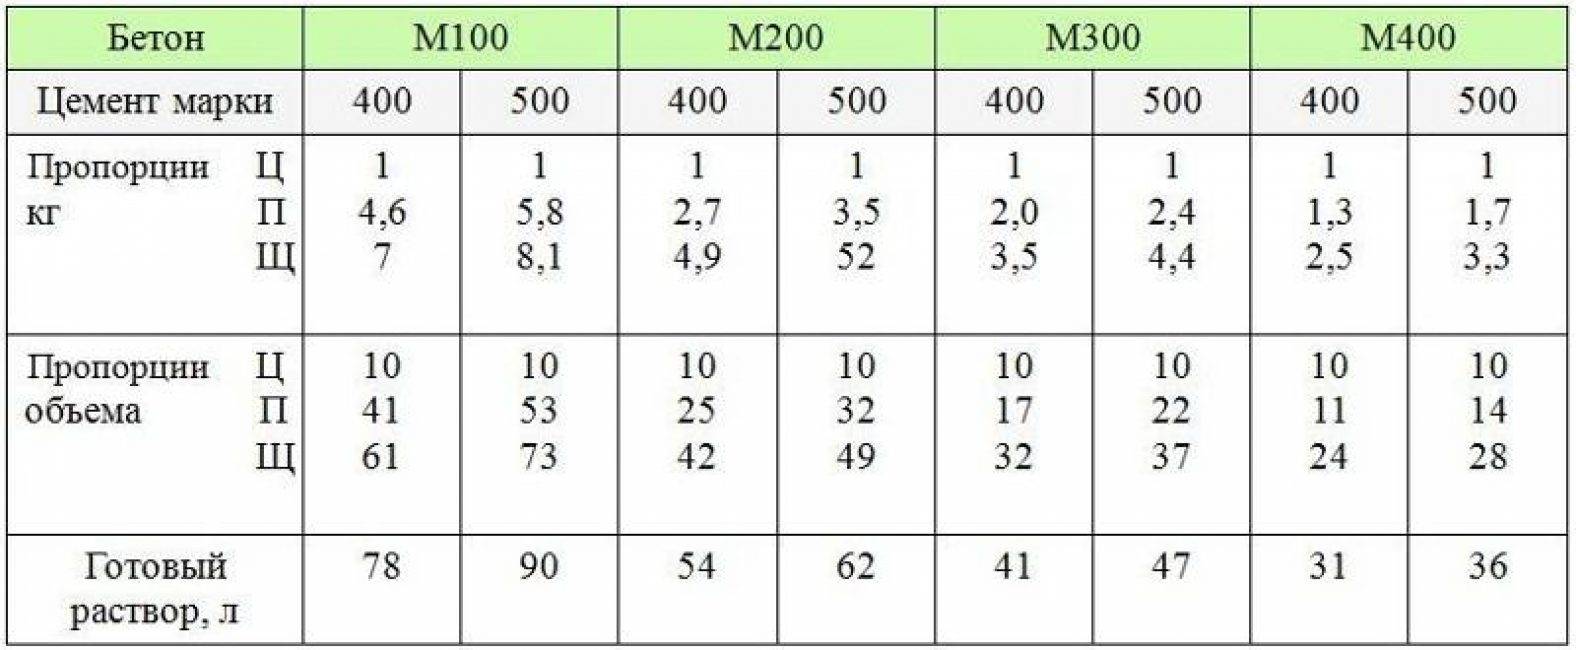 Рецепт бетона м200, м300 и м400 в ведрах [для удобного применения]